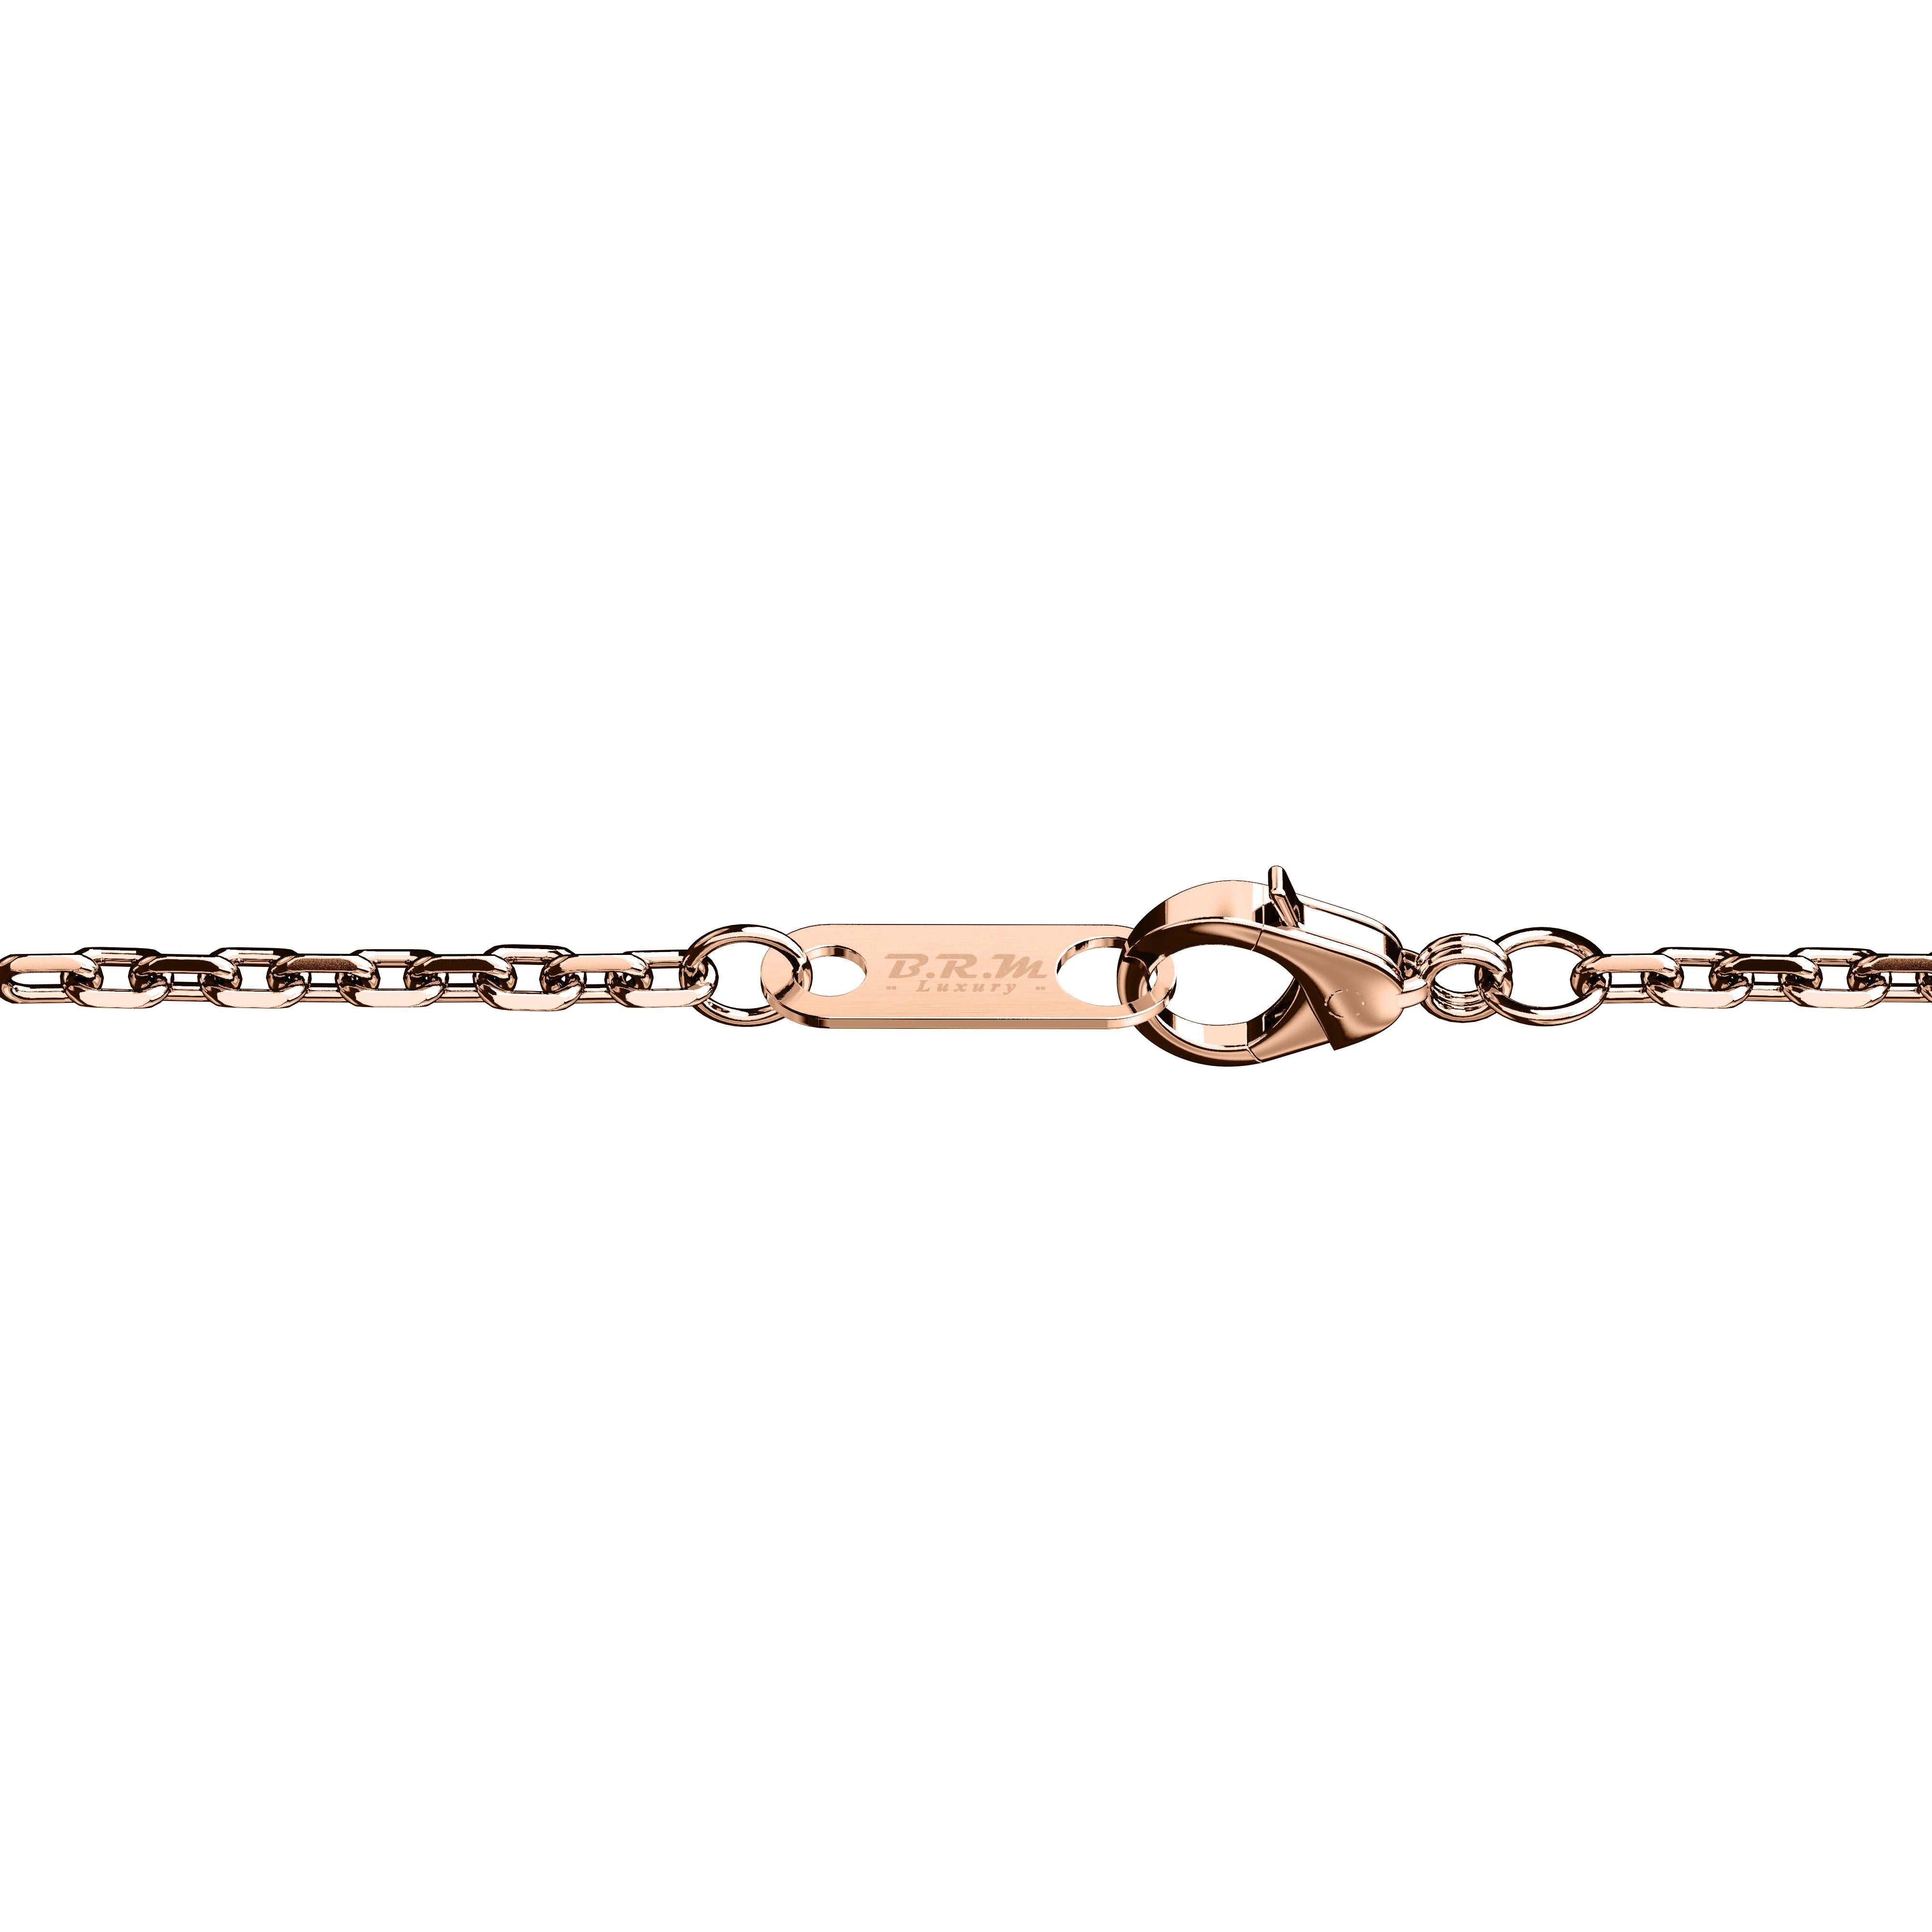 Le bracelet B.R.M Dolce Vita Twice (2 en 1) en or rose et gris 18 carats Spotting circle est une œuvre d'art exquise. 

Le motif unique de la succession de cercles en spirale, inspiré des techniques de décoration en horlogerie, ne manquera pas de